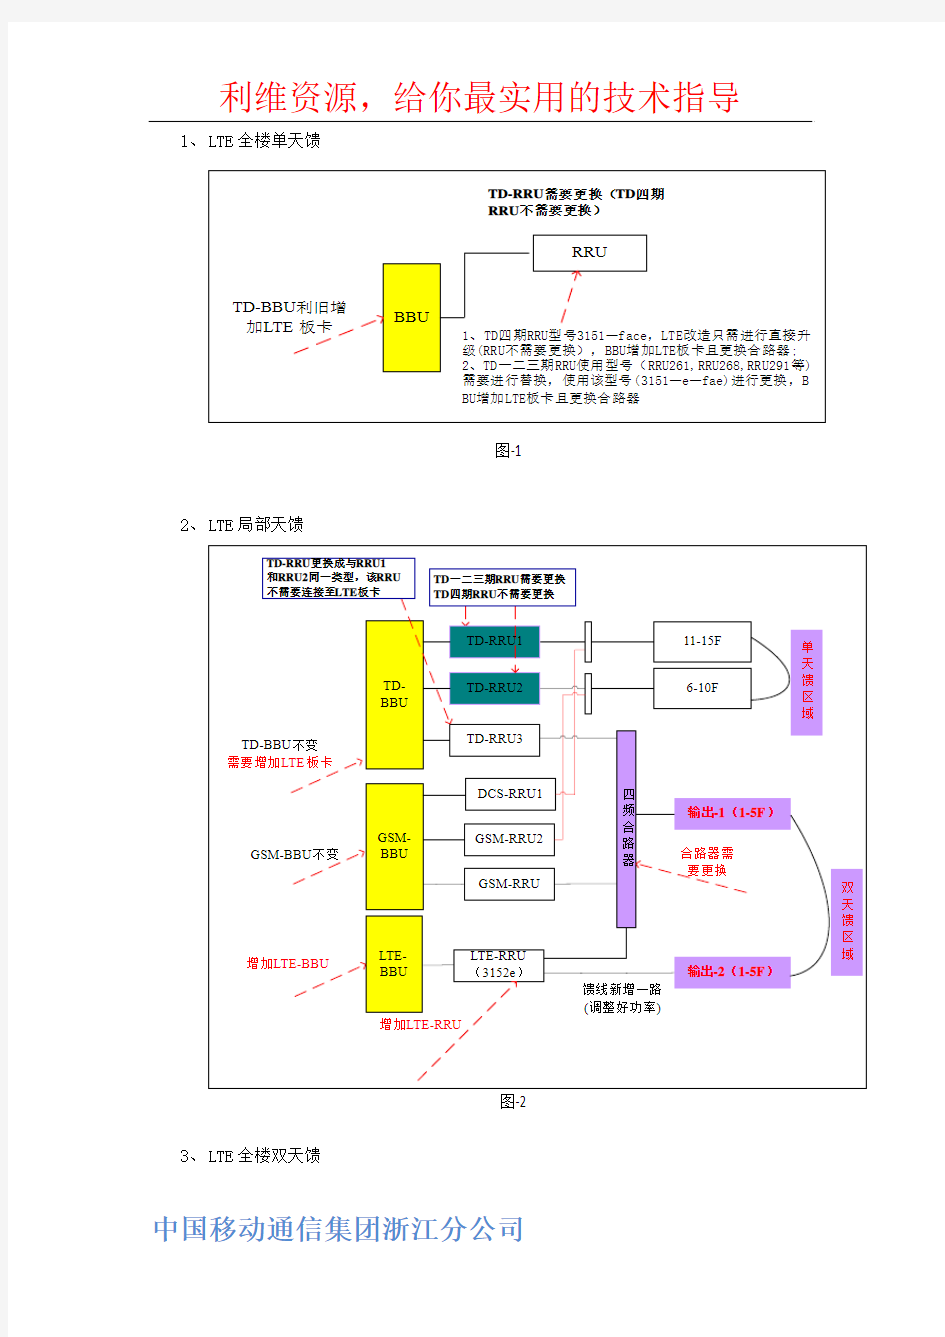 中国移动通信集团浙江分公司LTE室分设计规范